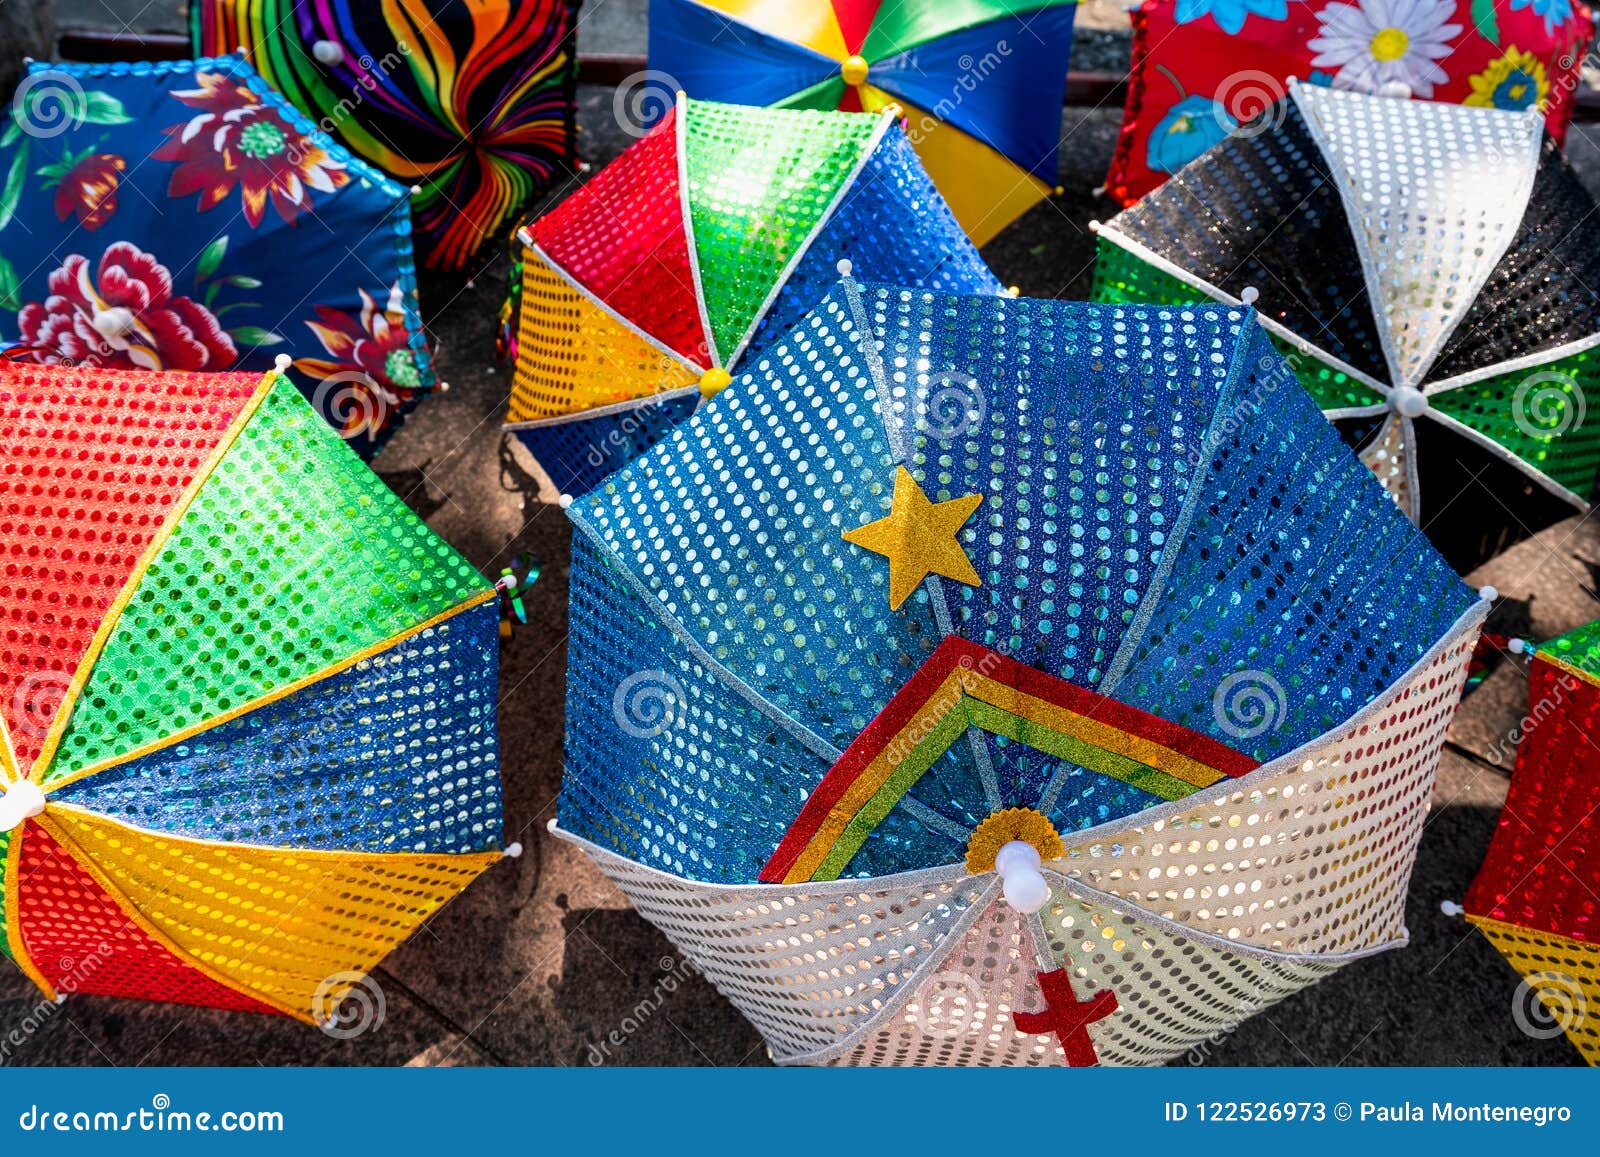 colorful brazilian carnival decoration in the city of olinda, pernambuco, brazil.